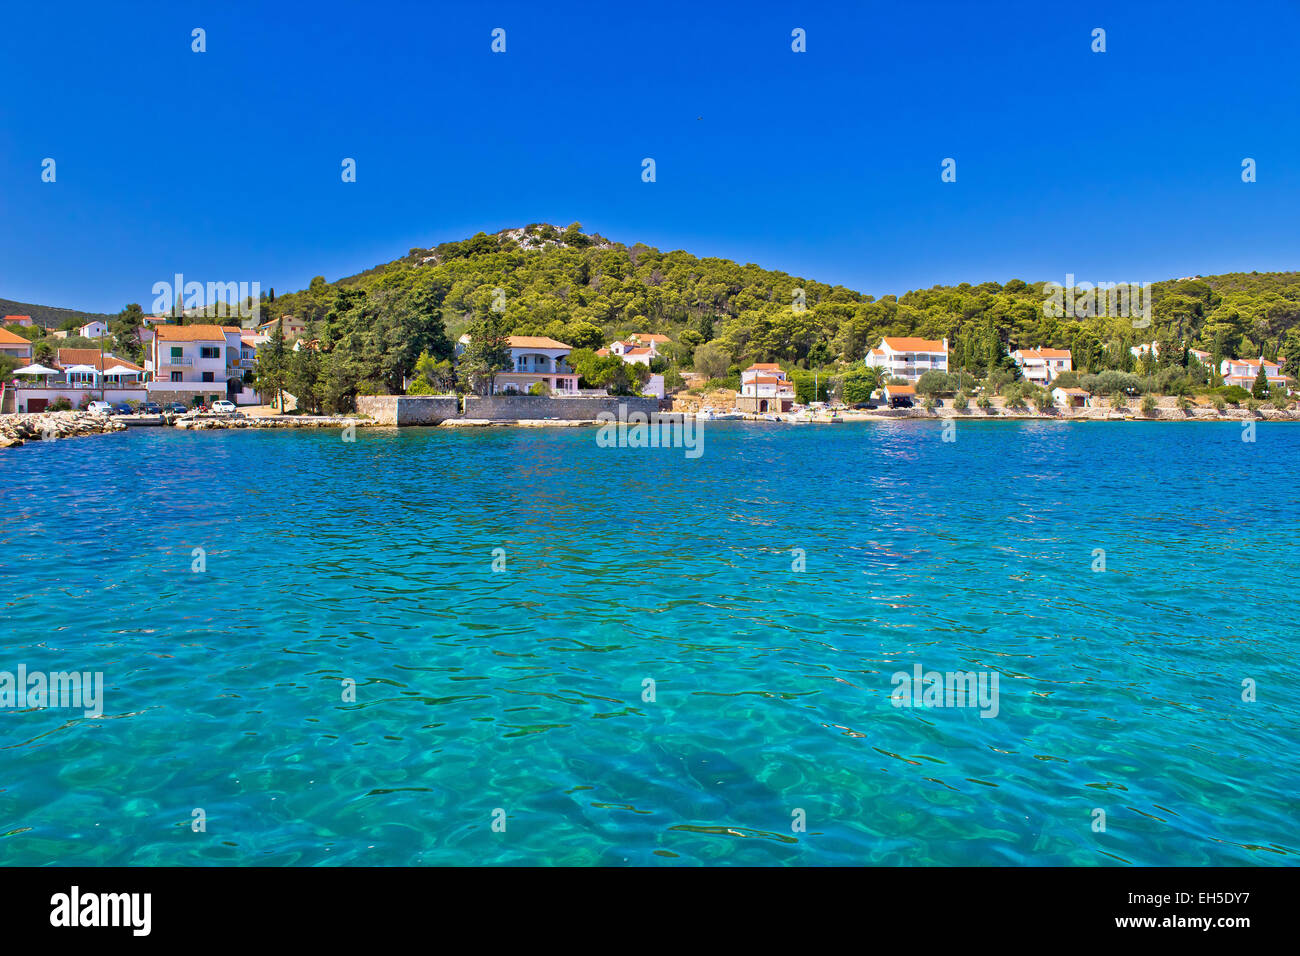 Island of Ugljan turquoise coast, Dalmatia, Croatia Stock Photo